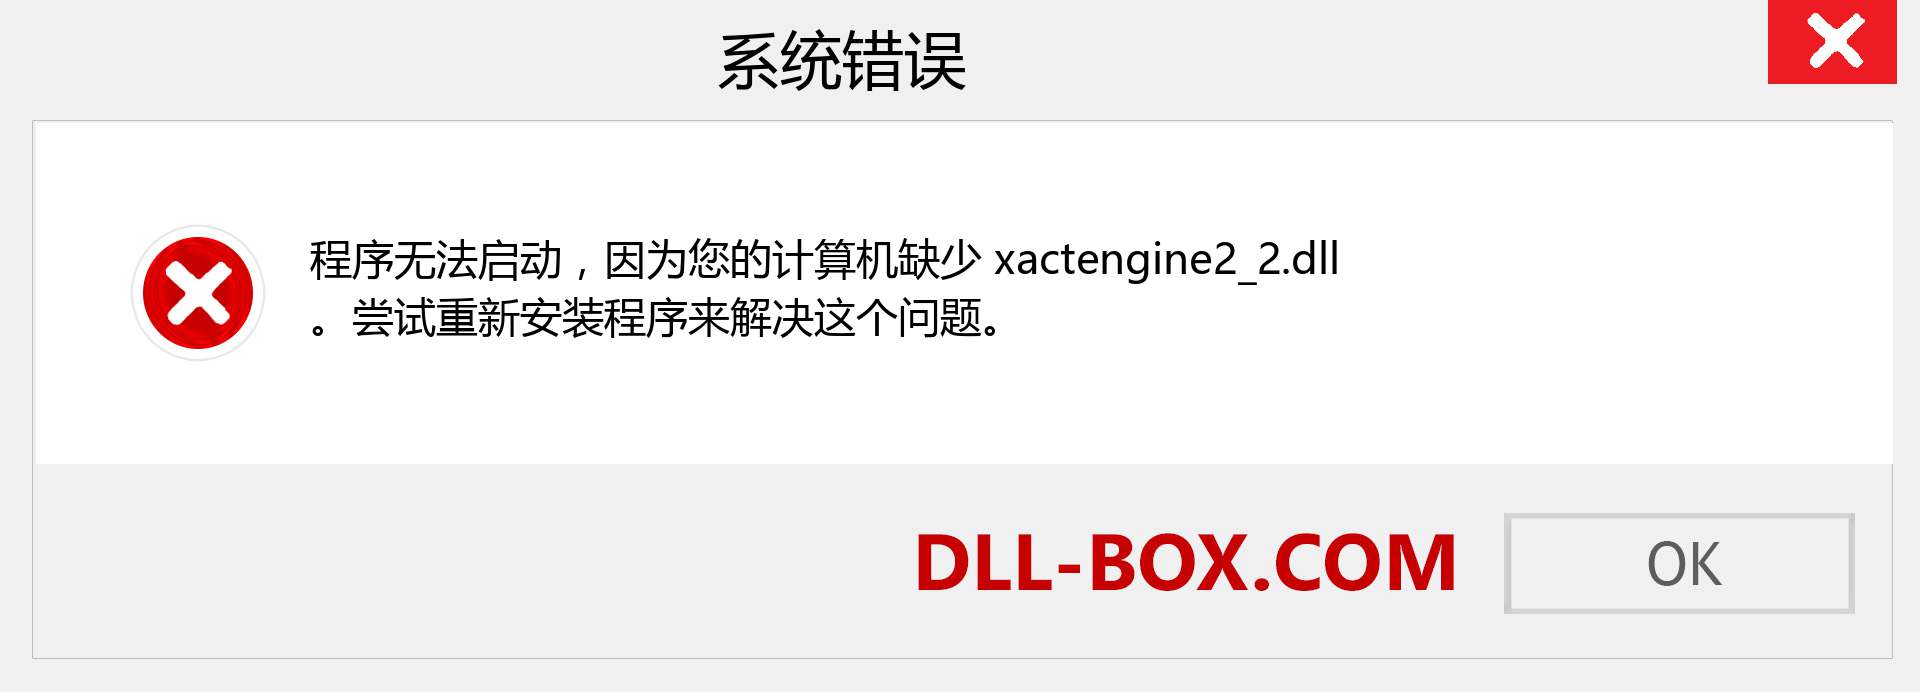 xactengine2_2.dll 文件丢失？。 适用于 Windows 7、8、10 的下载 - 修复 Windows、照片、图像上的 xactengine2_2 dll 丢失错误